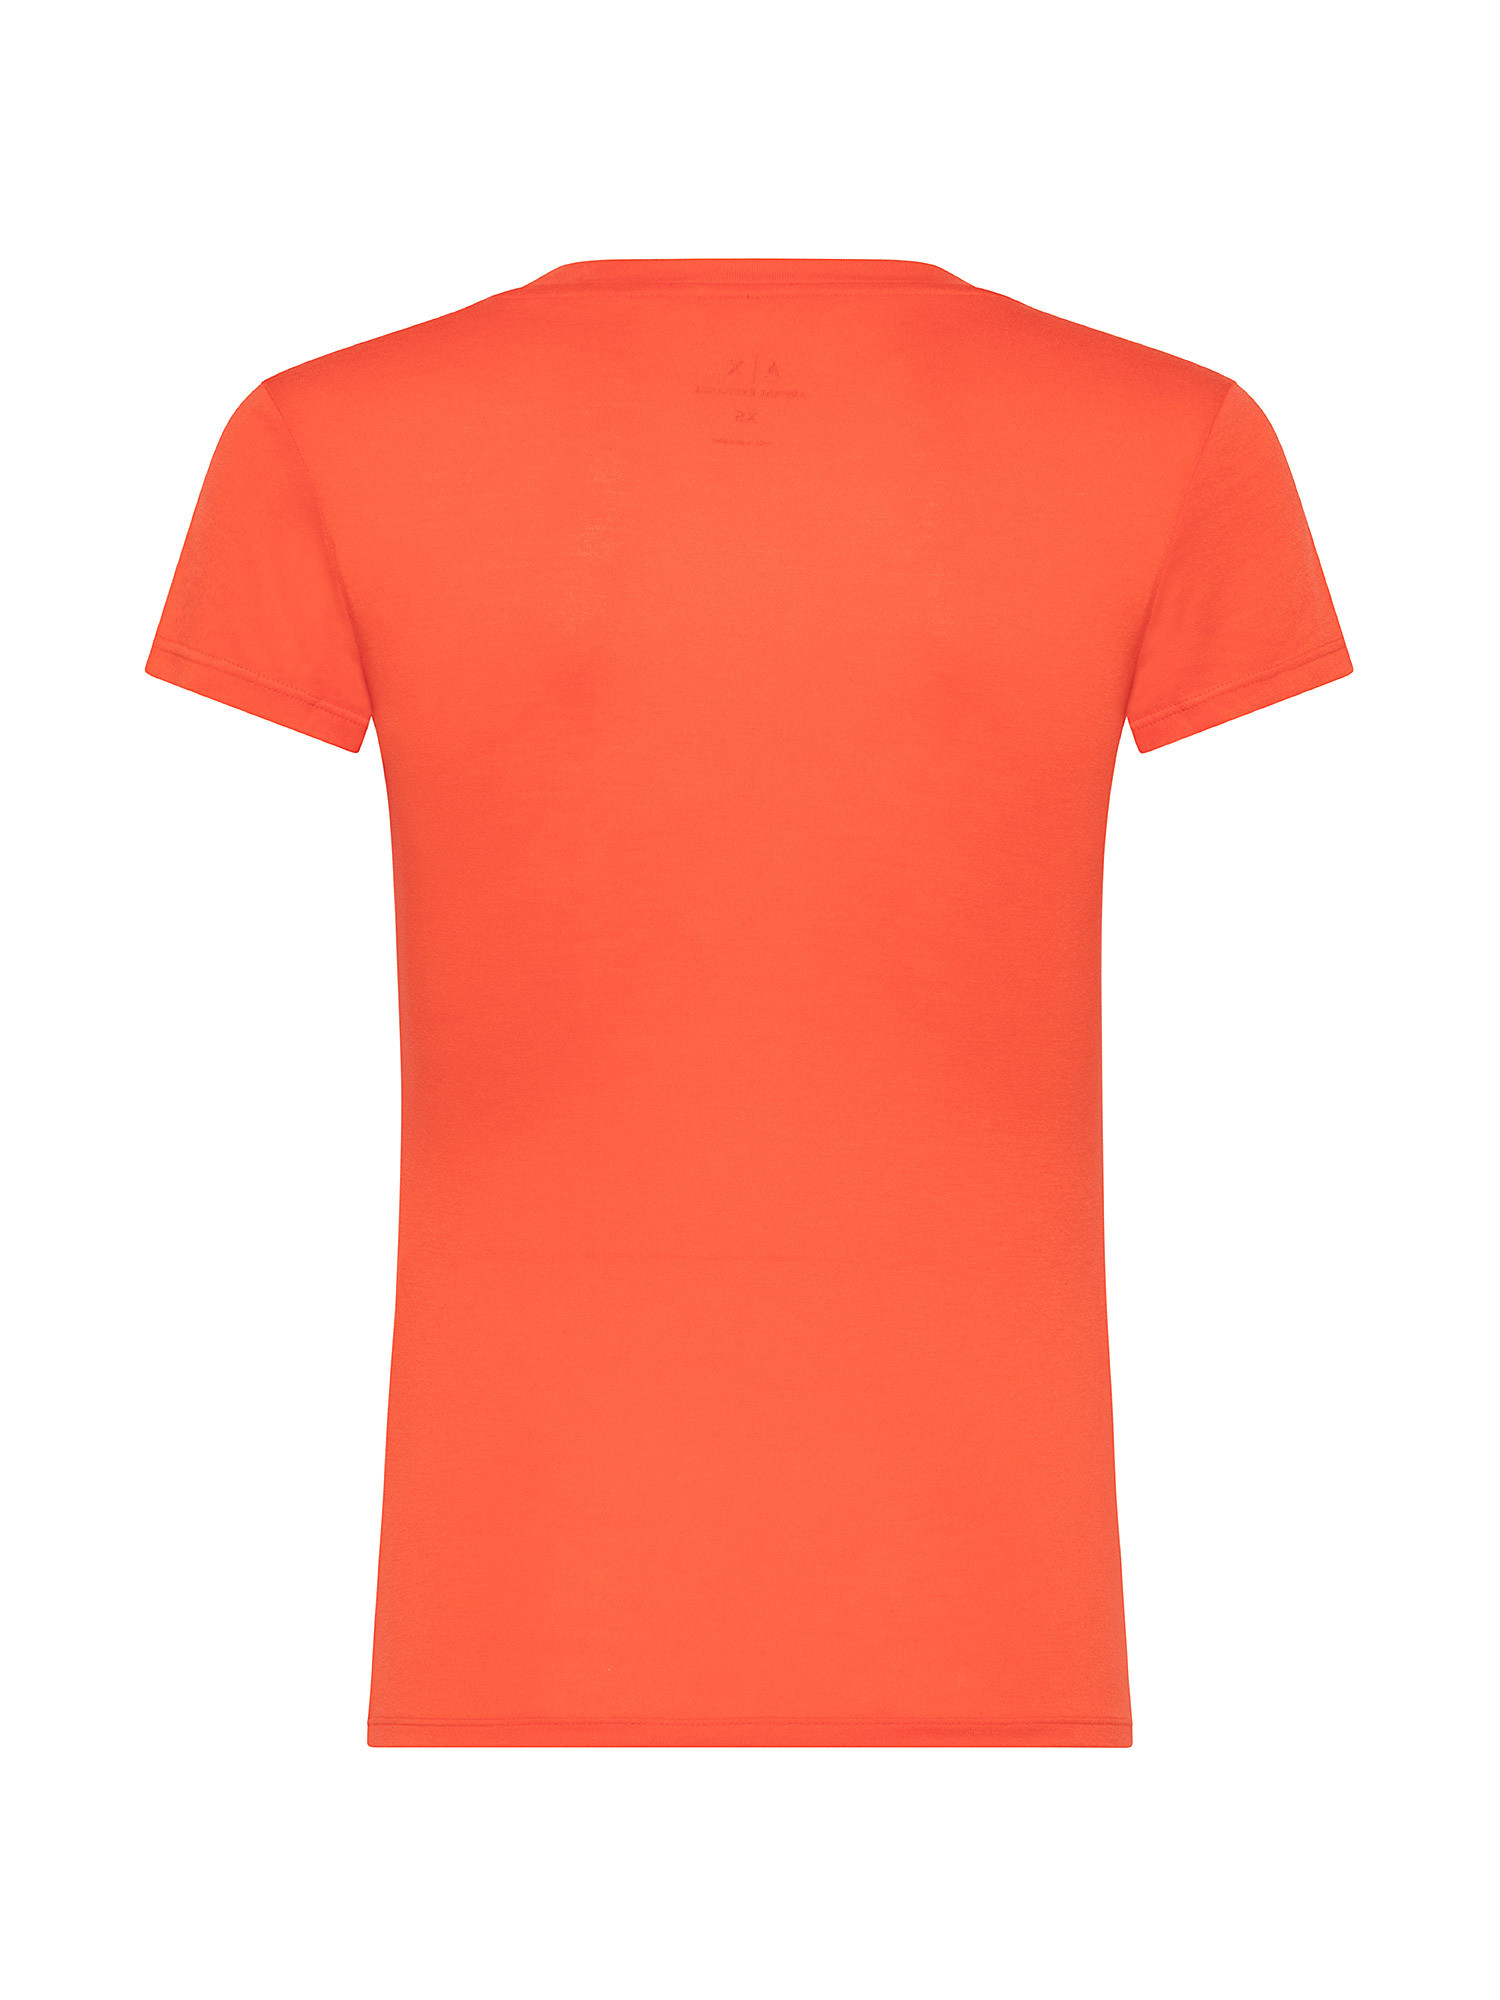 V-neck slim fit T-shirt, Orange, large image number 1